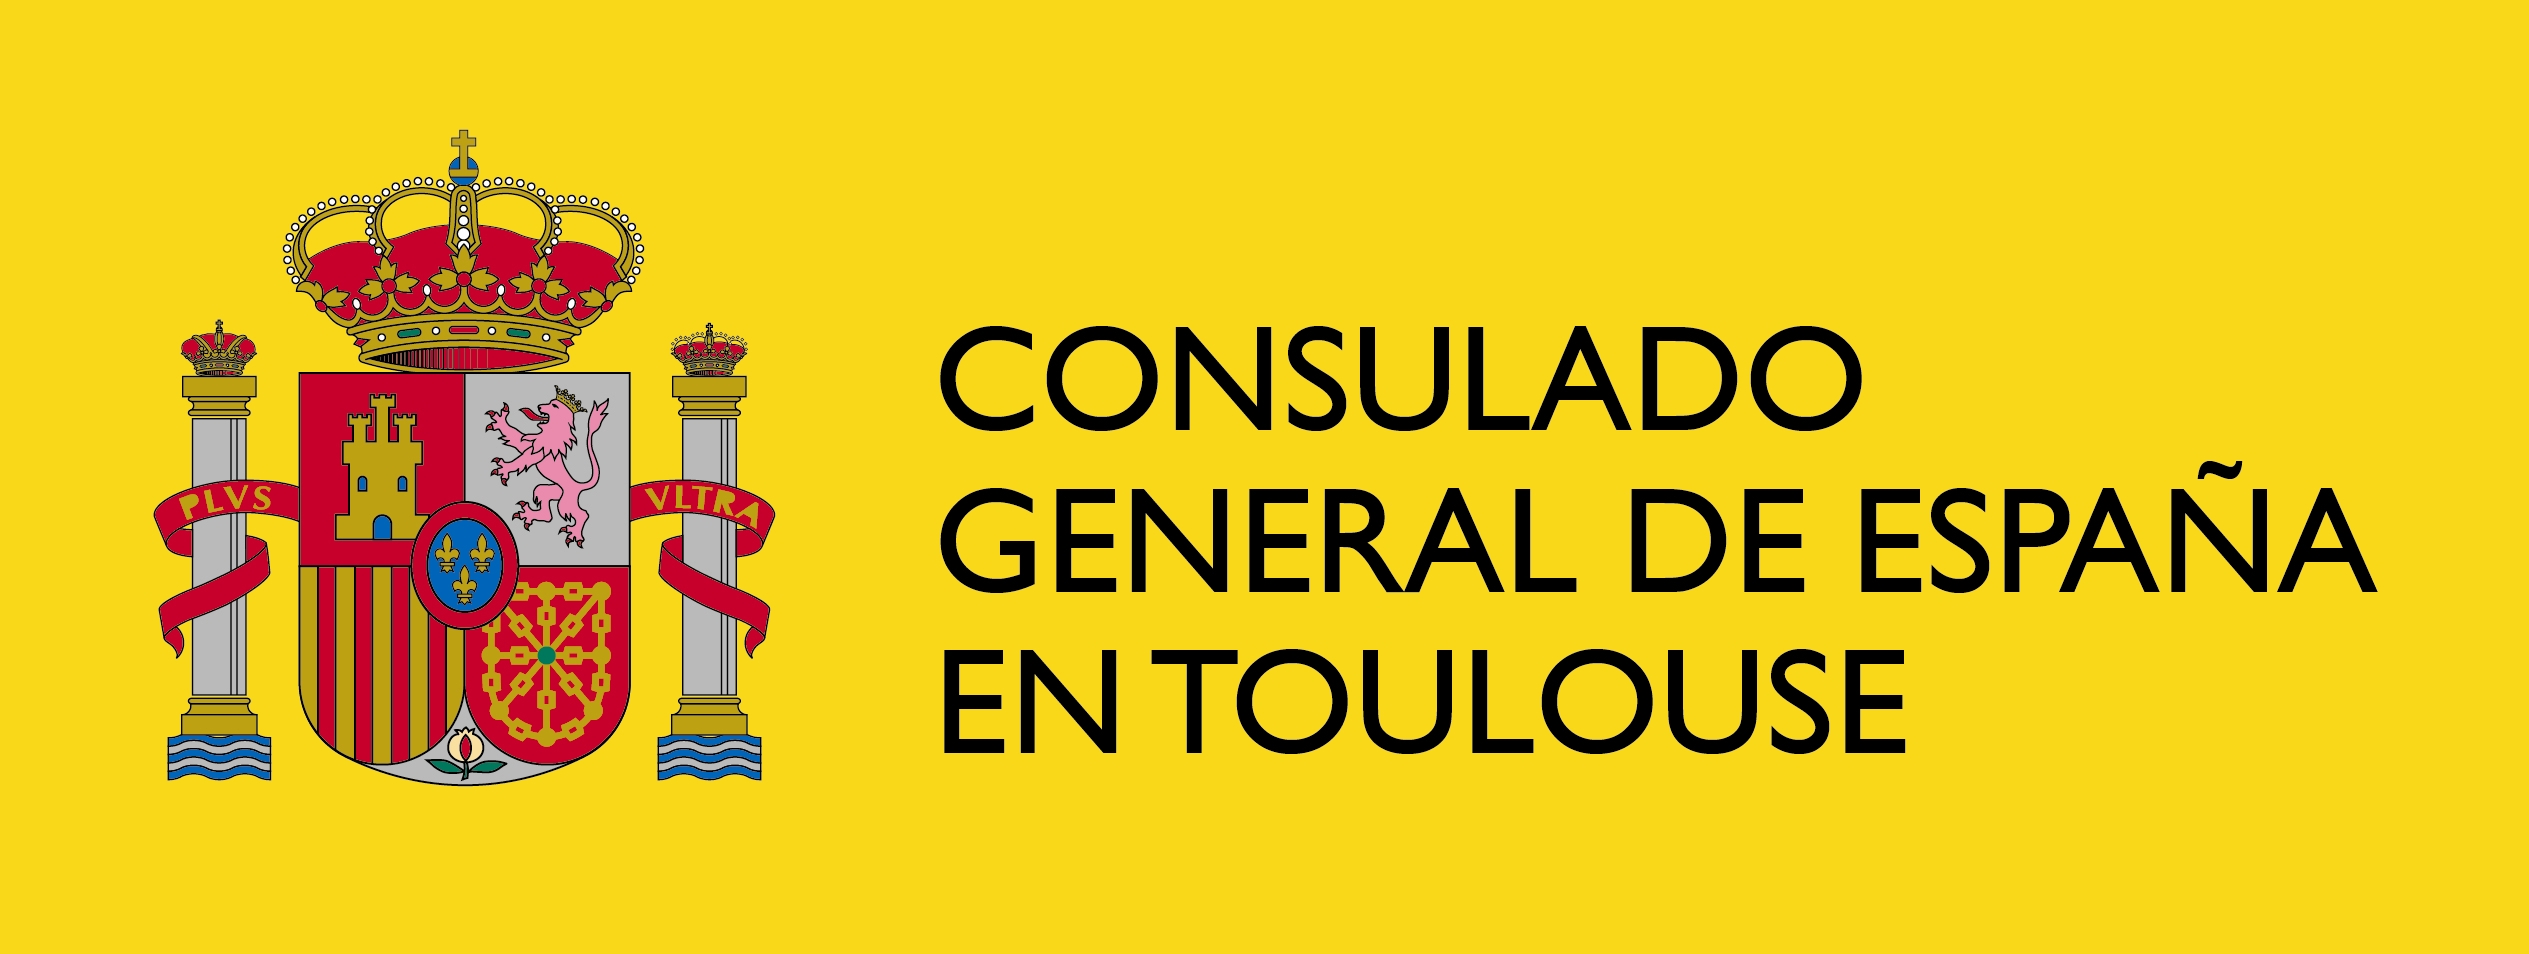 Consulado General de España (Toulouse)